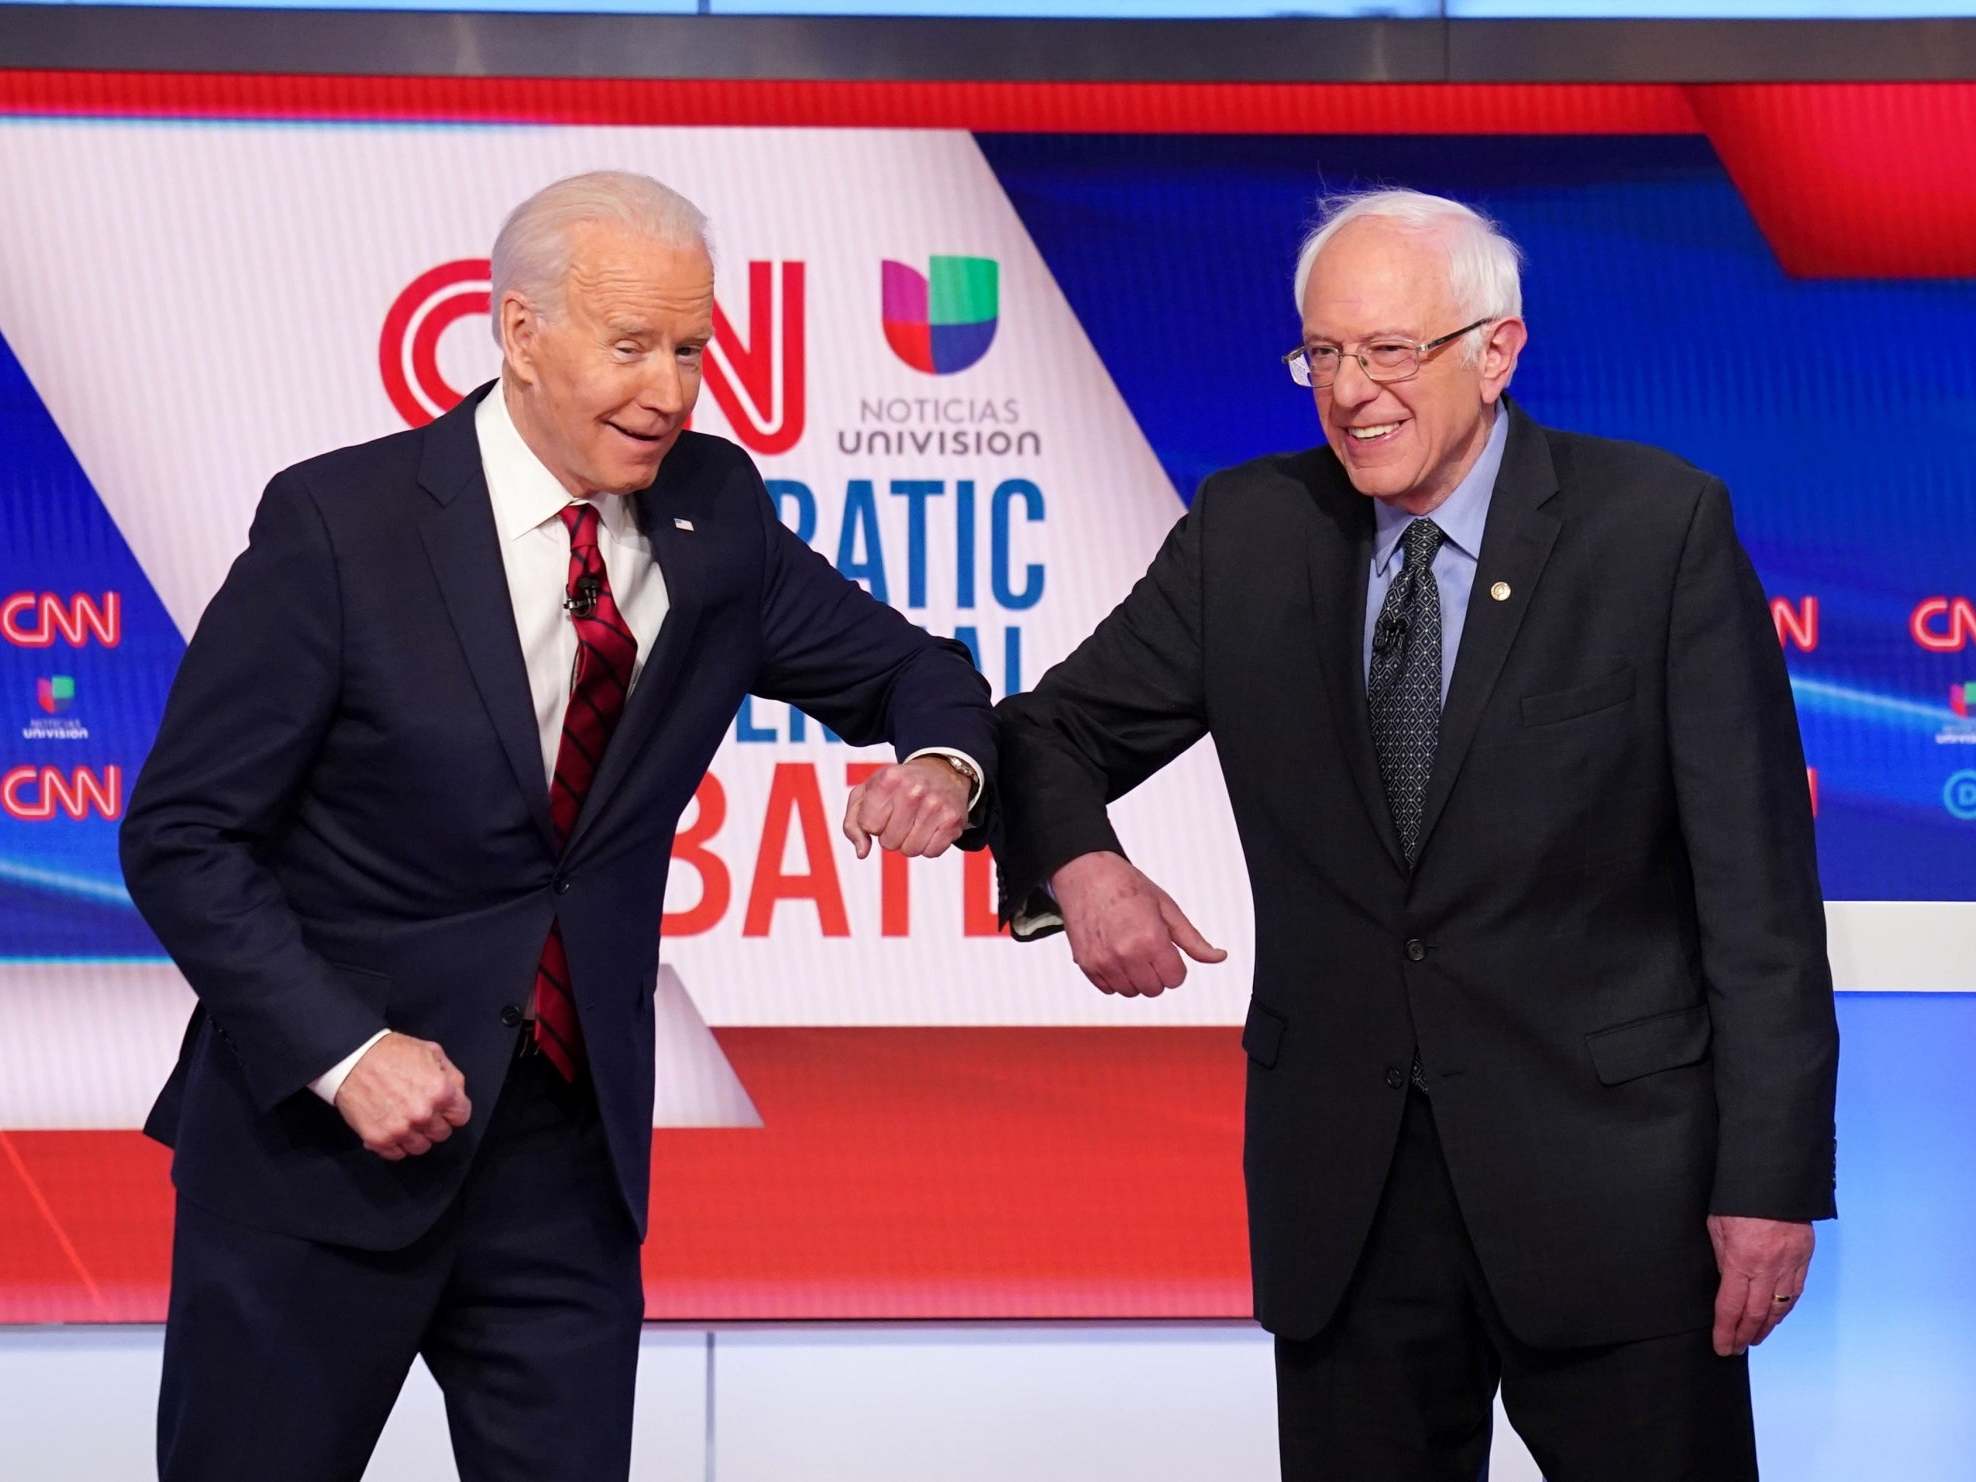 Joe Biden and Bernie Sanders greet with the coronavirus ‘handshake’ (Re